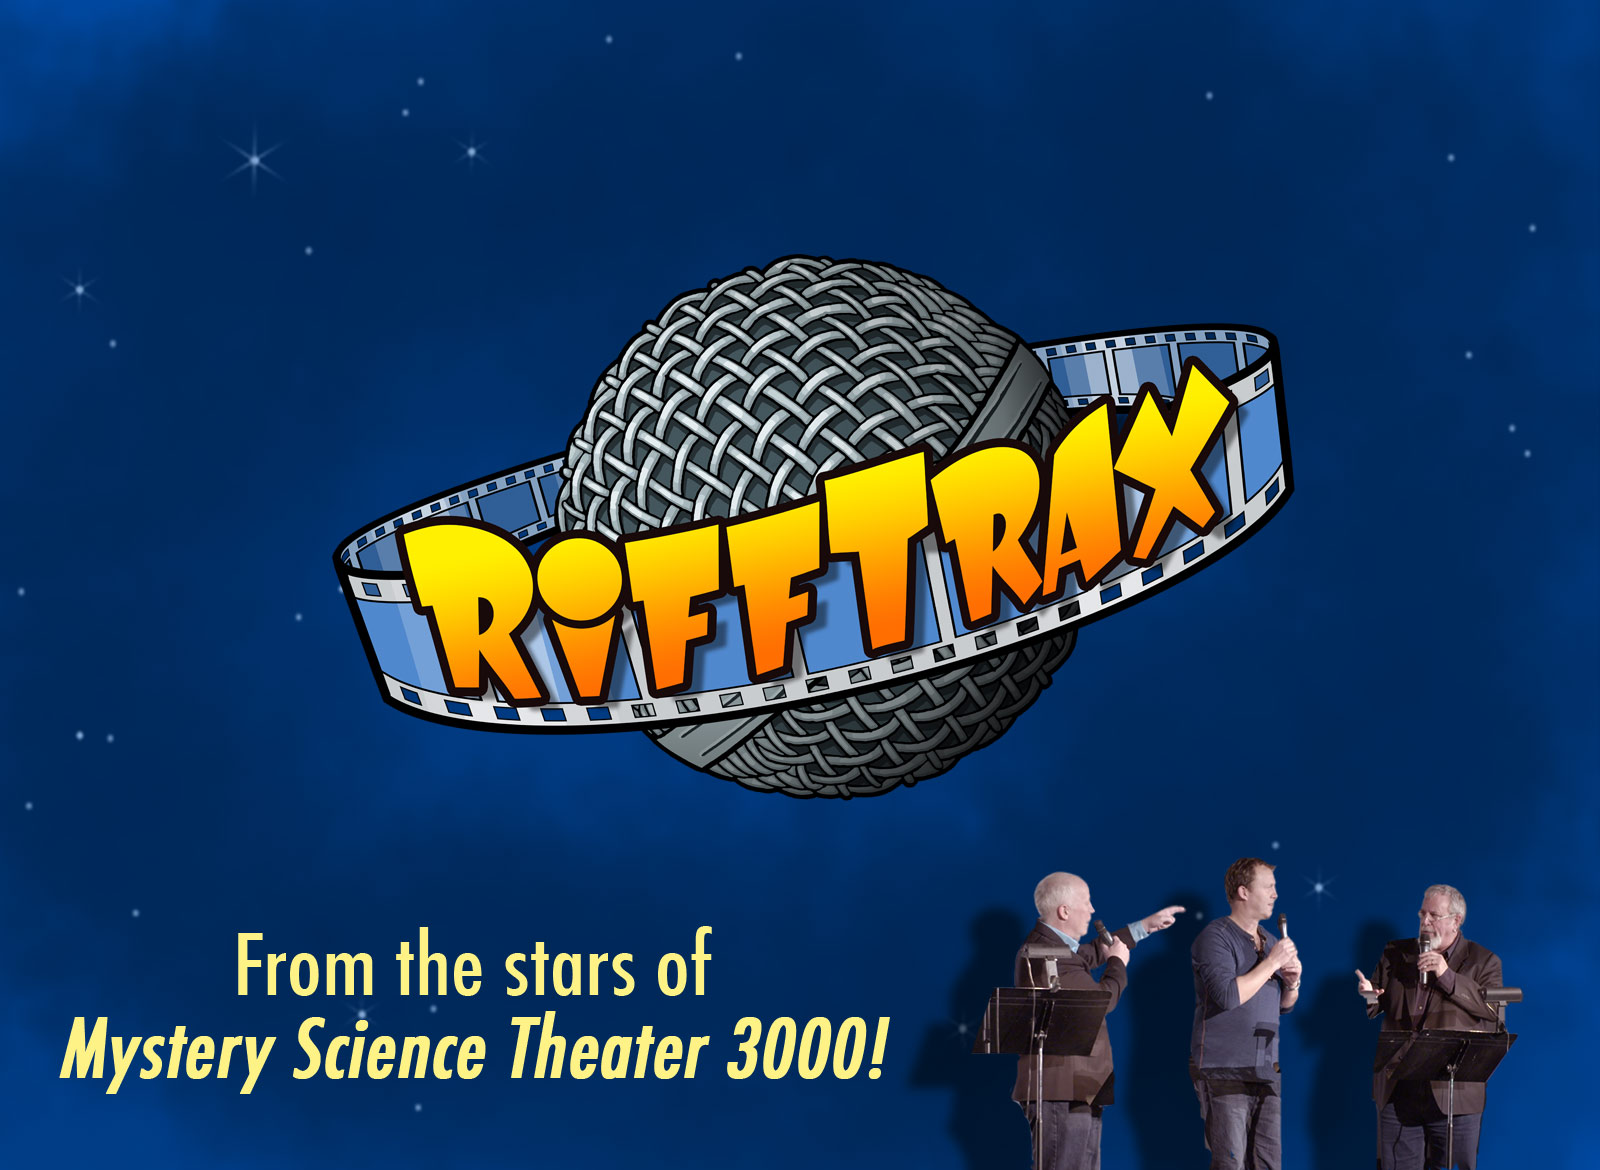 www.rifftrax.com